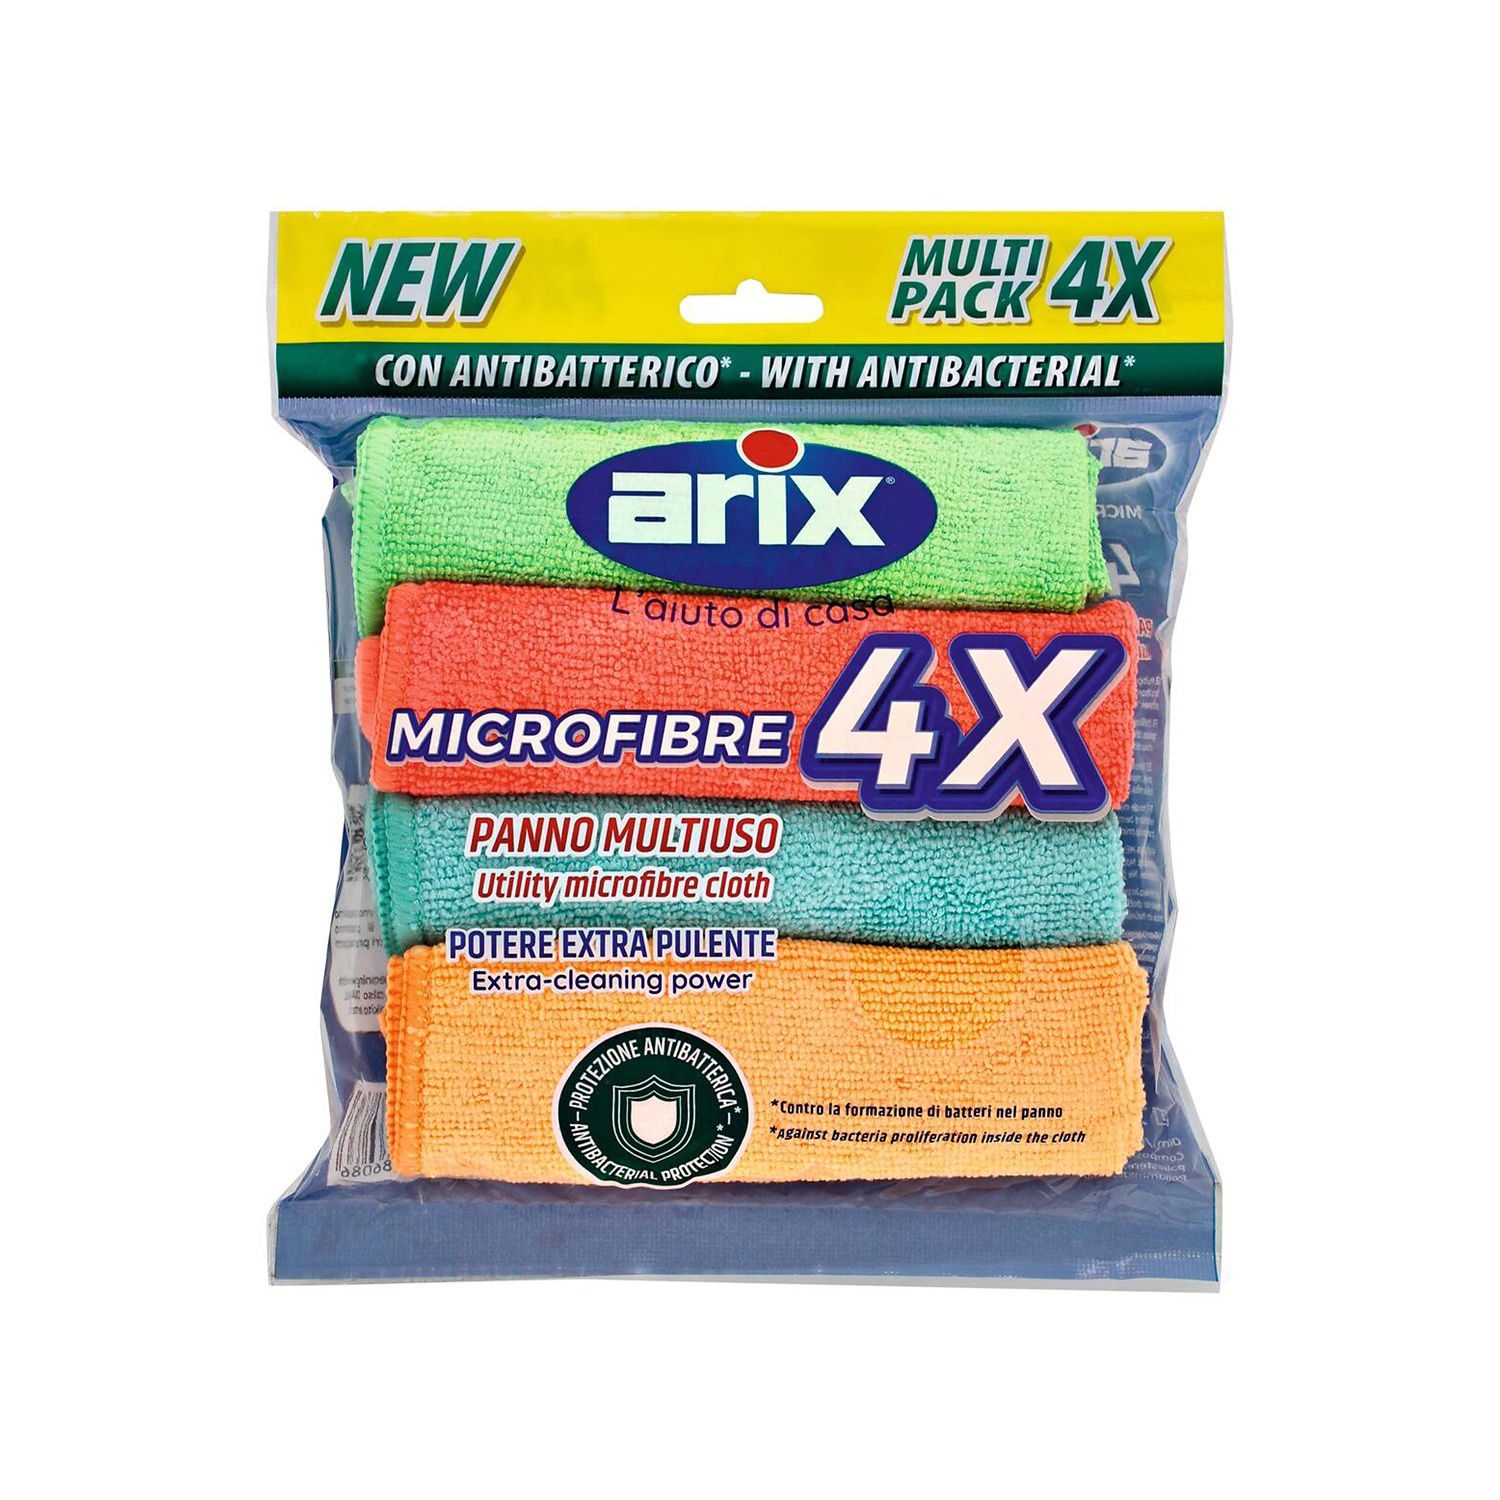 ARIX Panni in microfibra con antibatterico